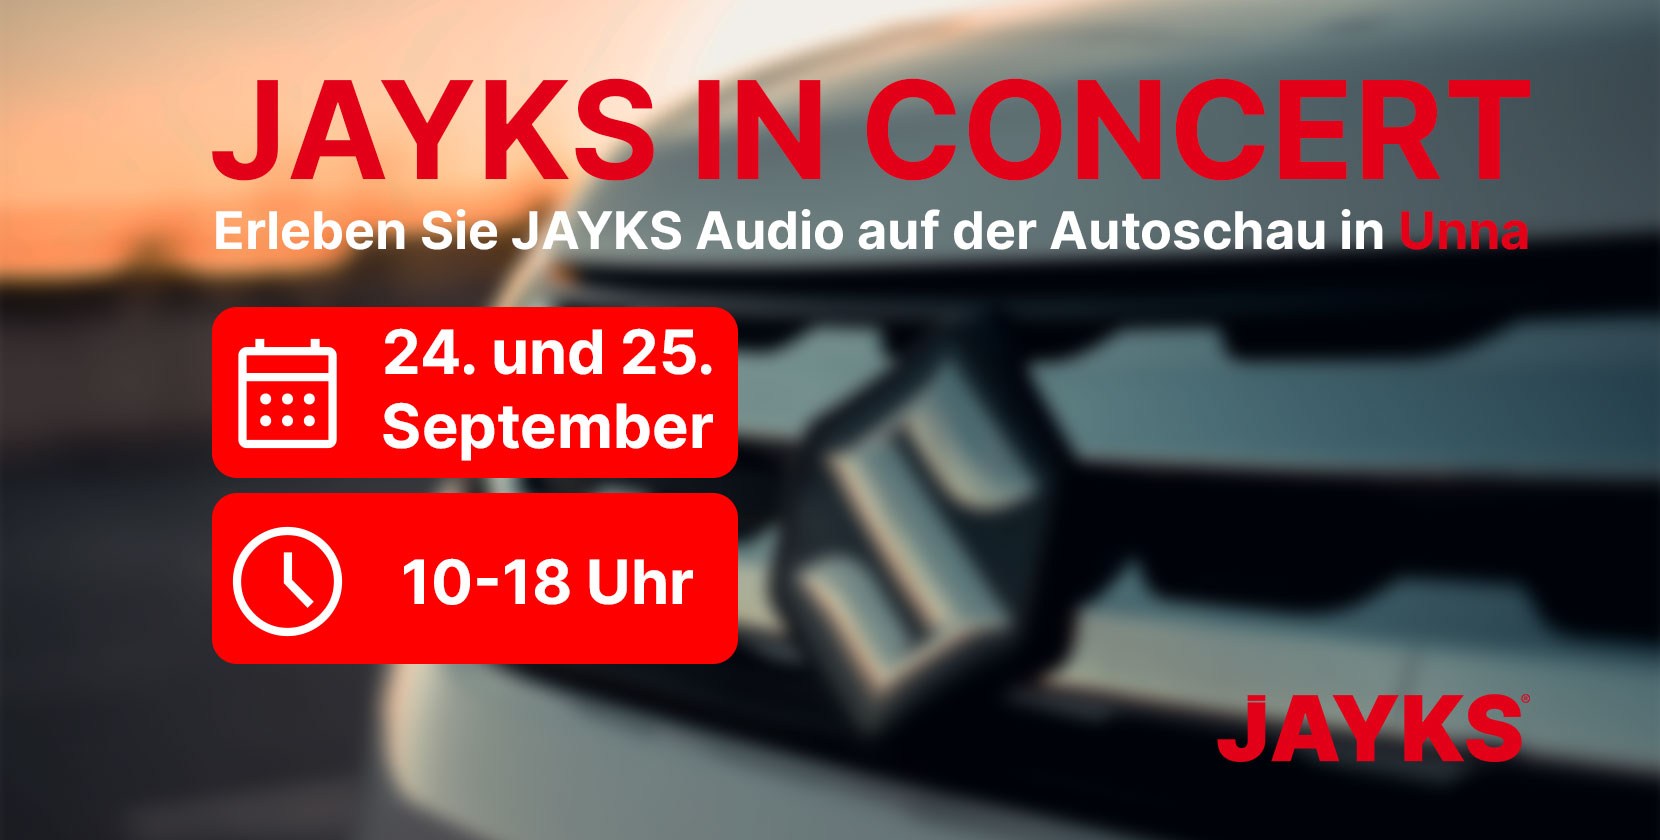 Erleben Sie JAYKS Audio auf der Autoschau in Unna am 24. und 25. September zwischen 10 und 18 Uhr! (Banner)